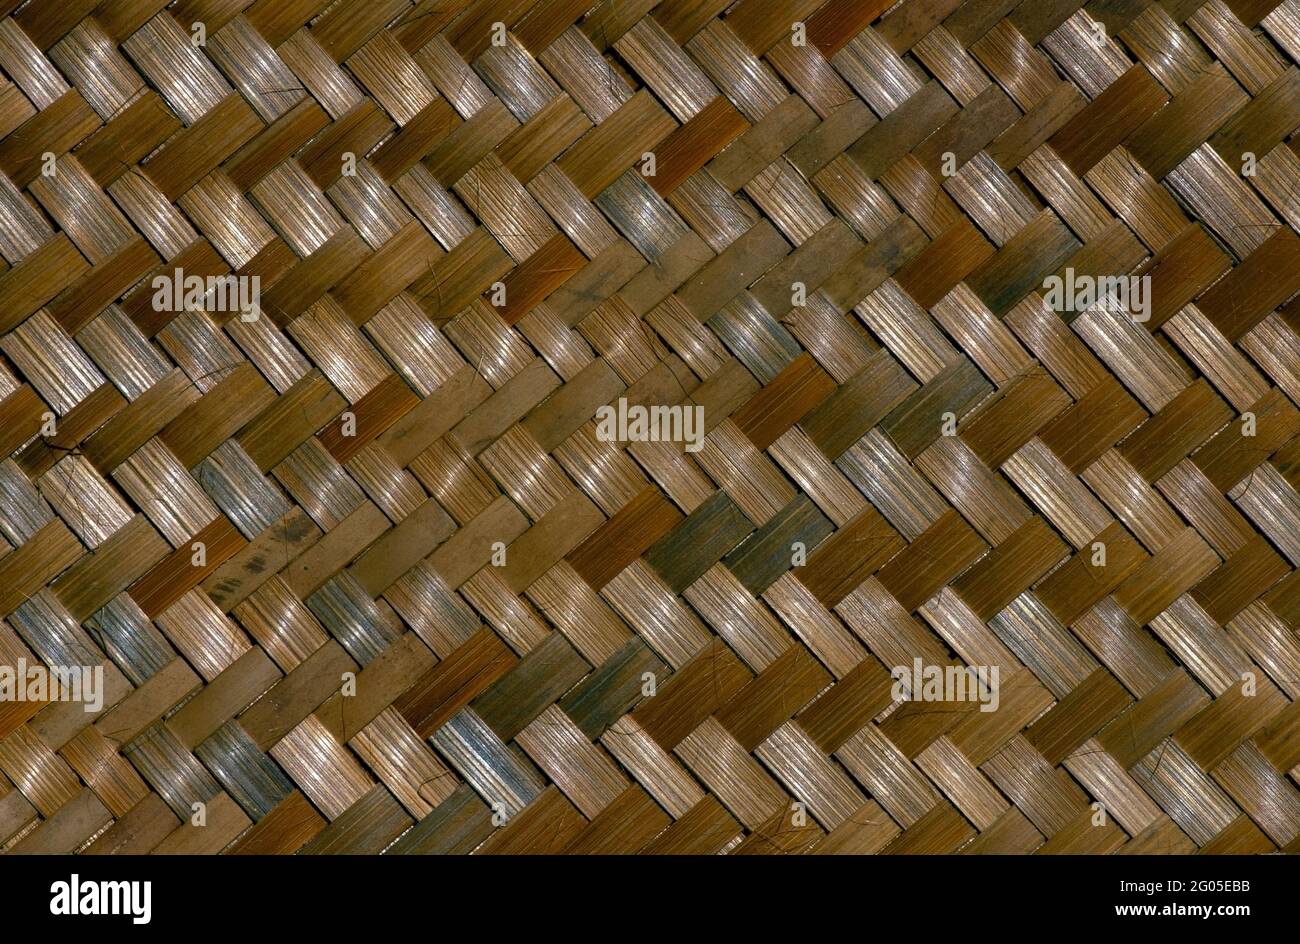 Artesanías tejidas fotografías e imágenes de alta resolución - Alamy